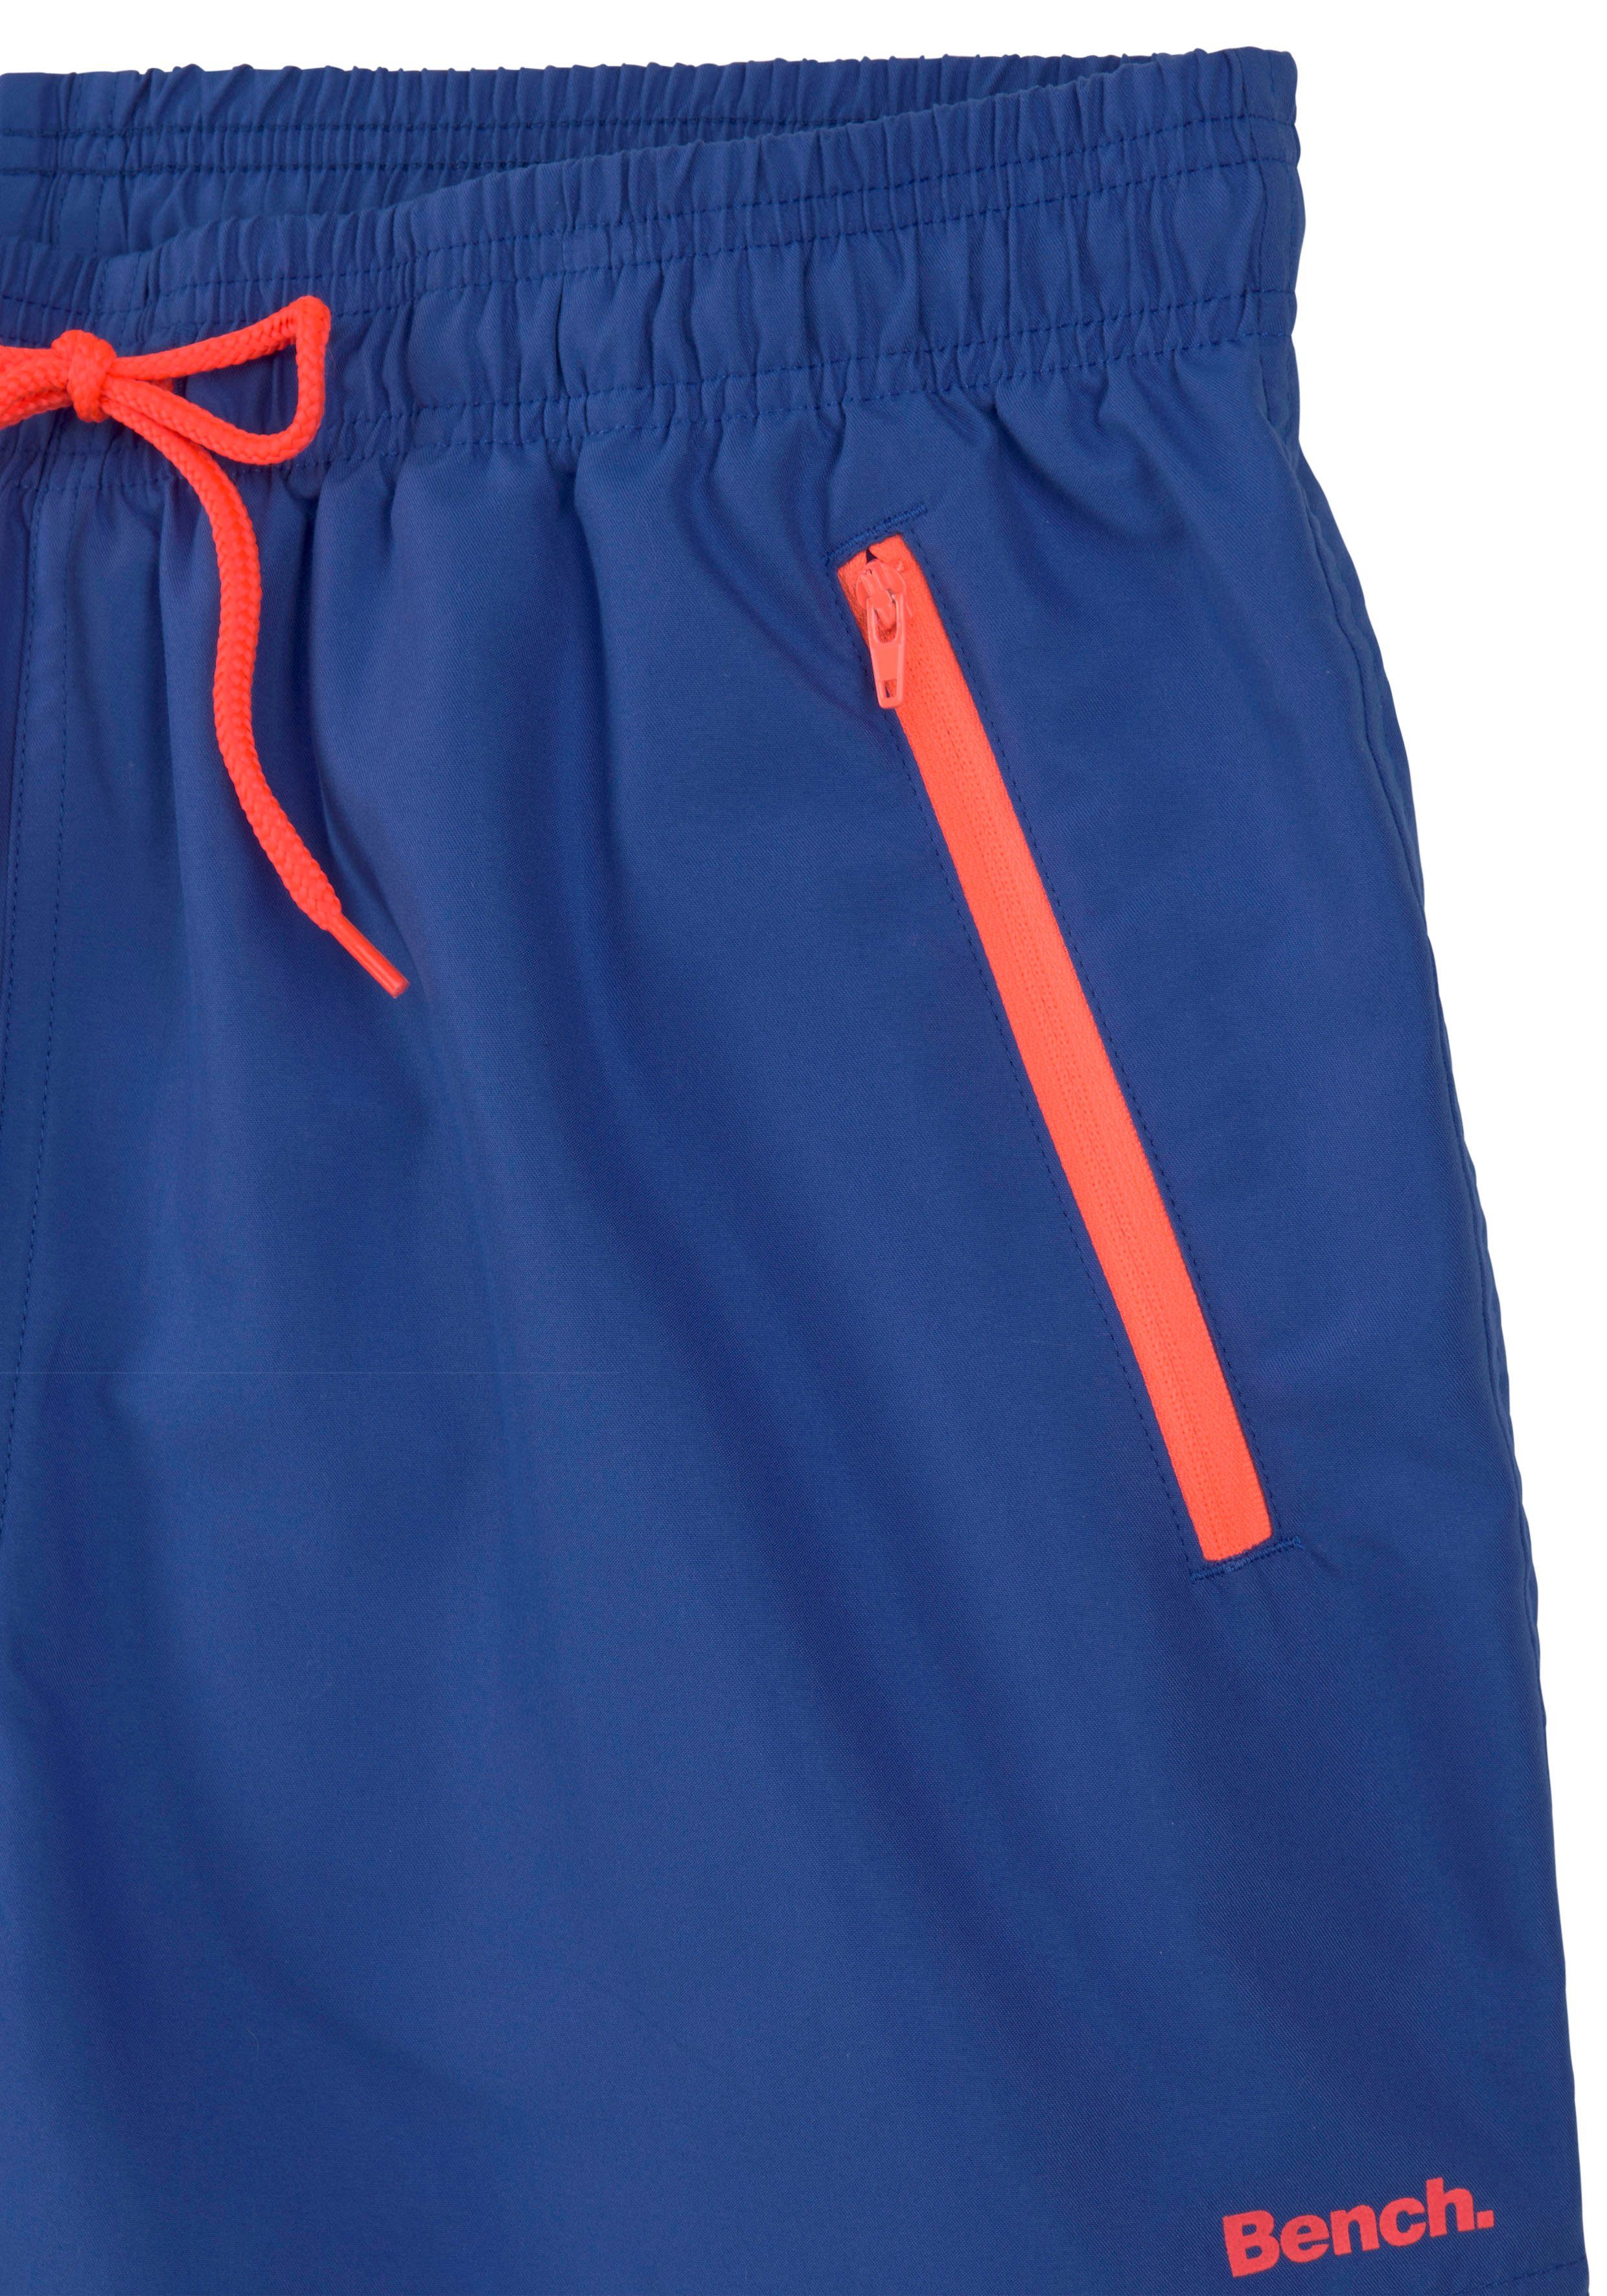 Bench. Reißverschlusstaschen blau-orange mit Badeshorts